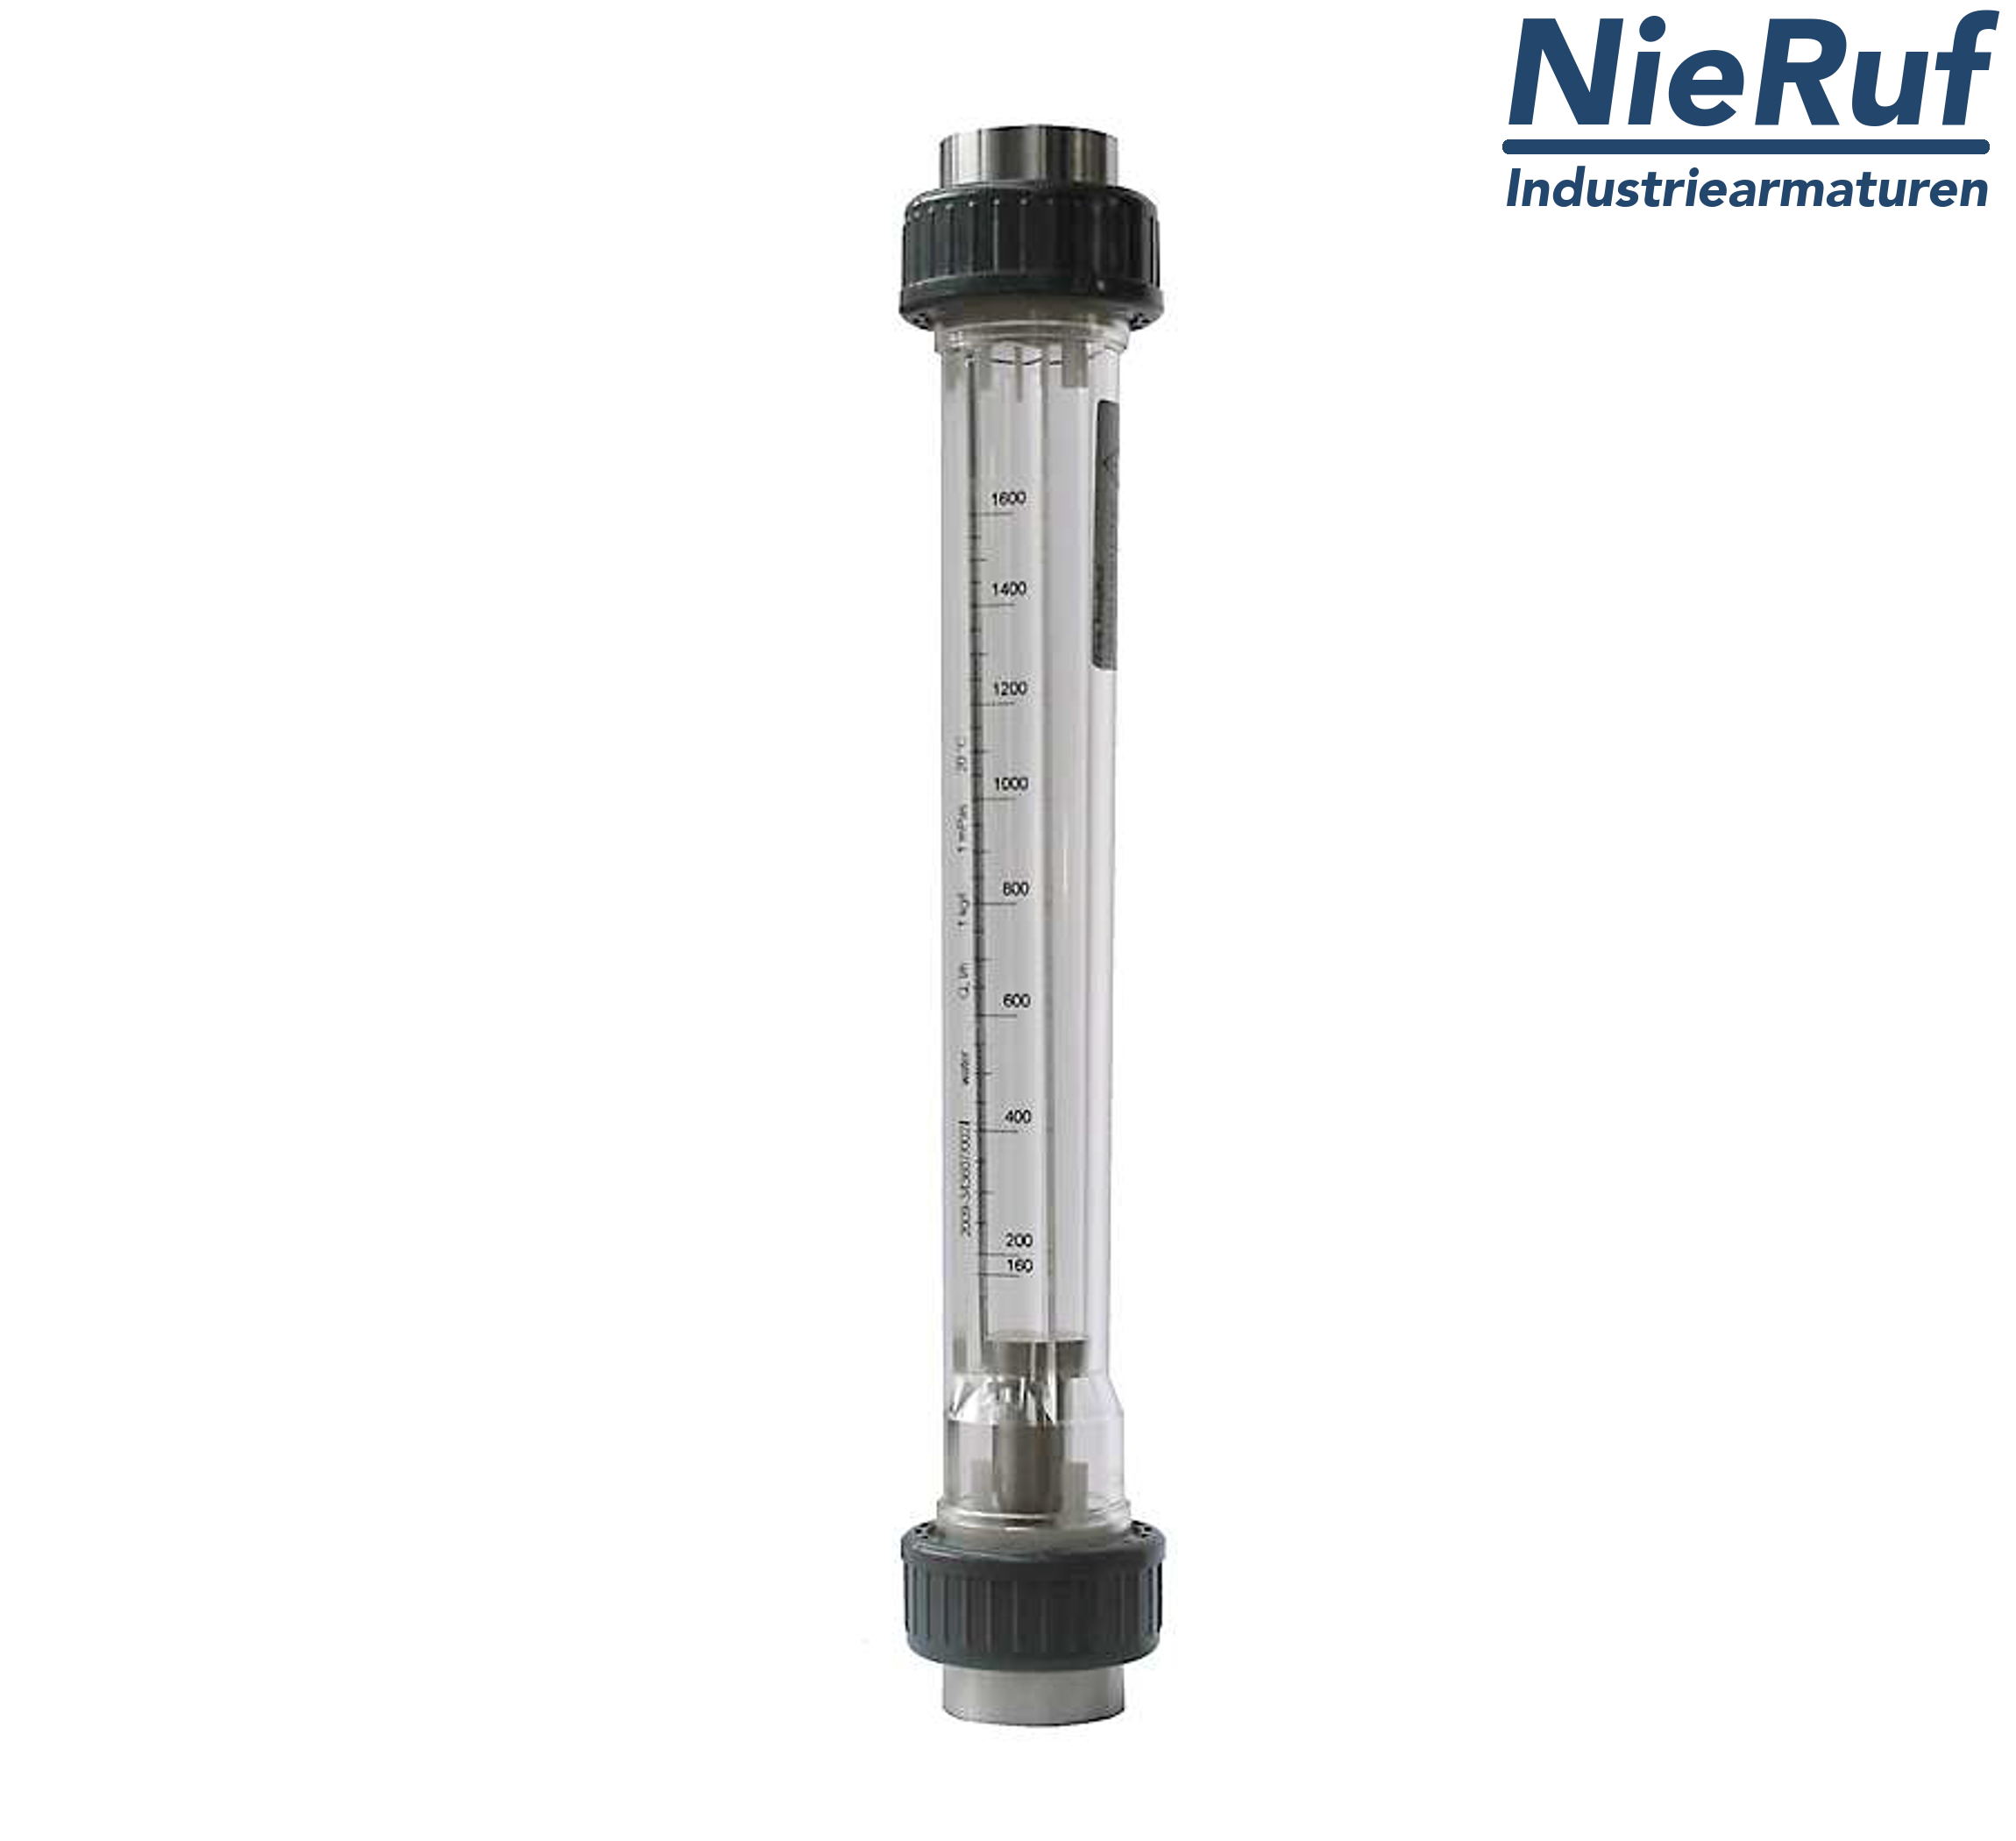 Variable area flowmeter 2" Inch NPT 70000.0 - 280000 l/h air NBR